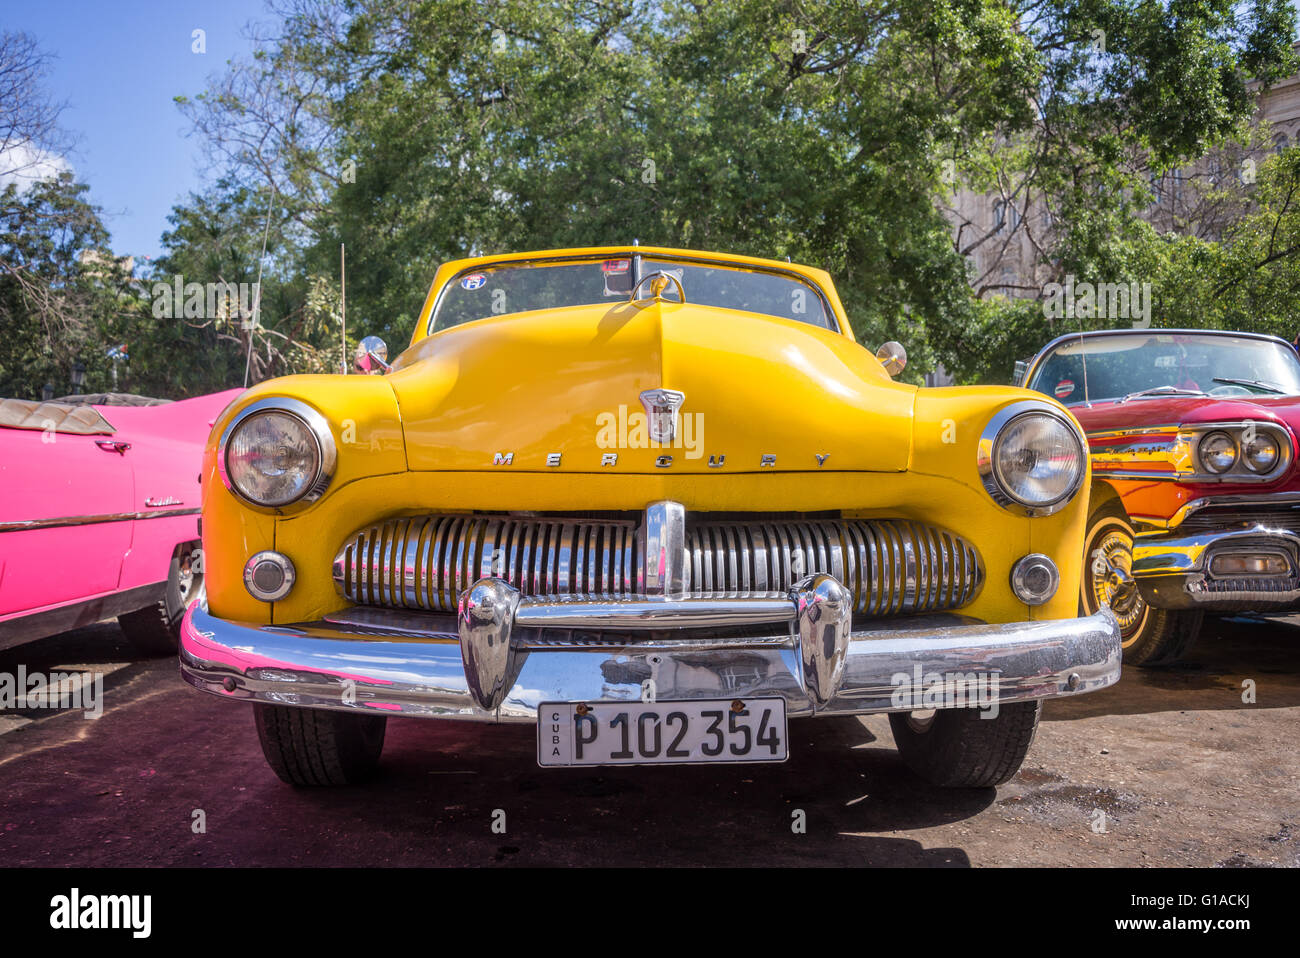 La HAVANE, CUBA - 18 avril : de l'avant d'un américain classique jaune voiture Ford Mercury, le 18 avril 2016 à La Havane Banque D'Images